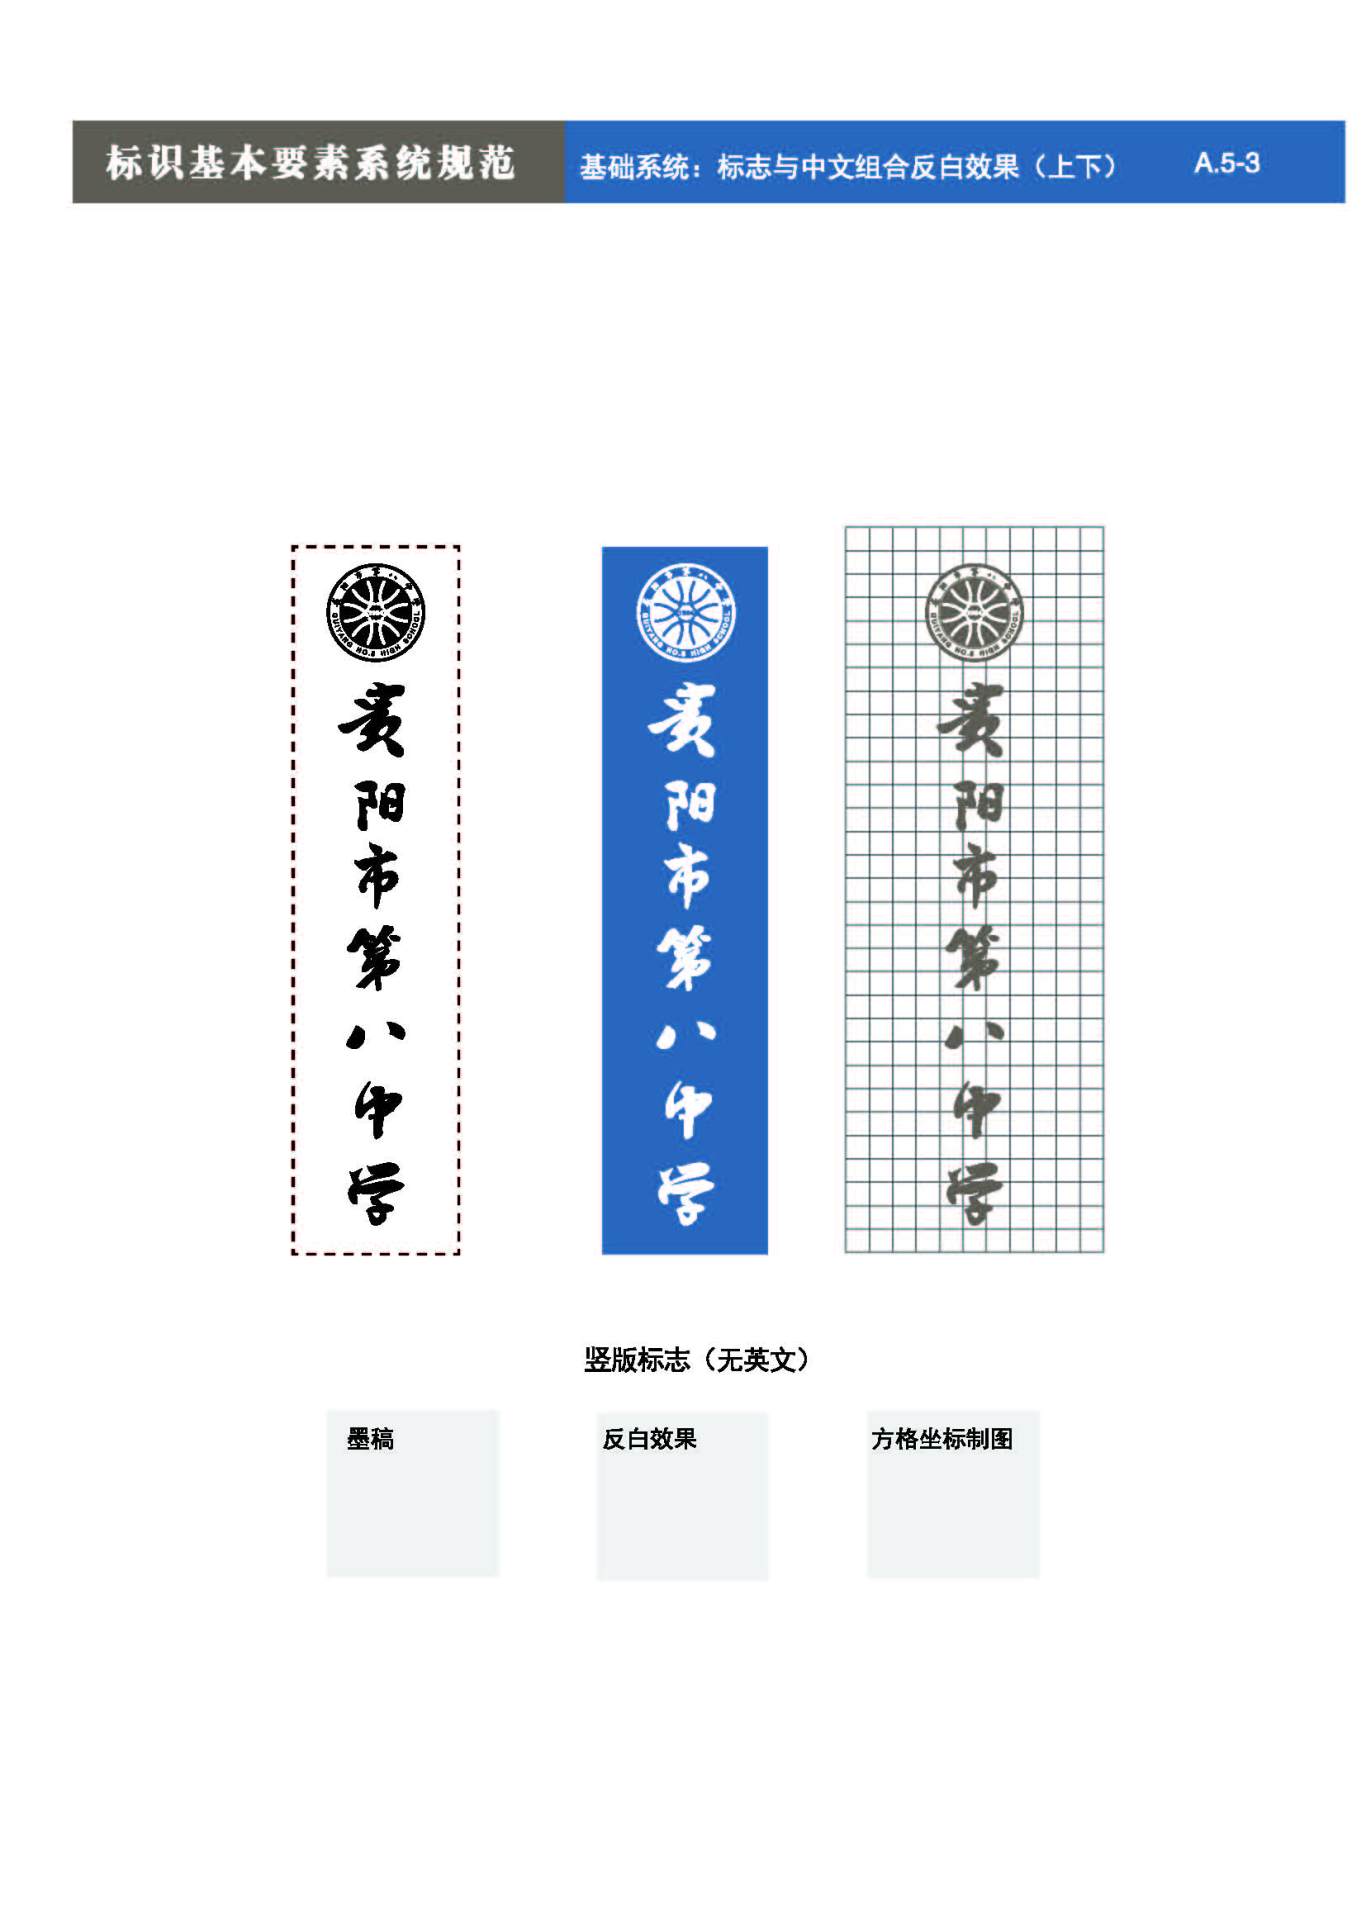 貴陽第八中學Logo、VIS設計圖14